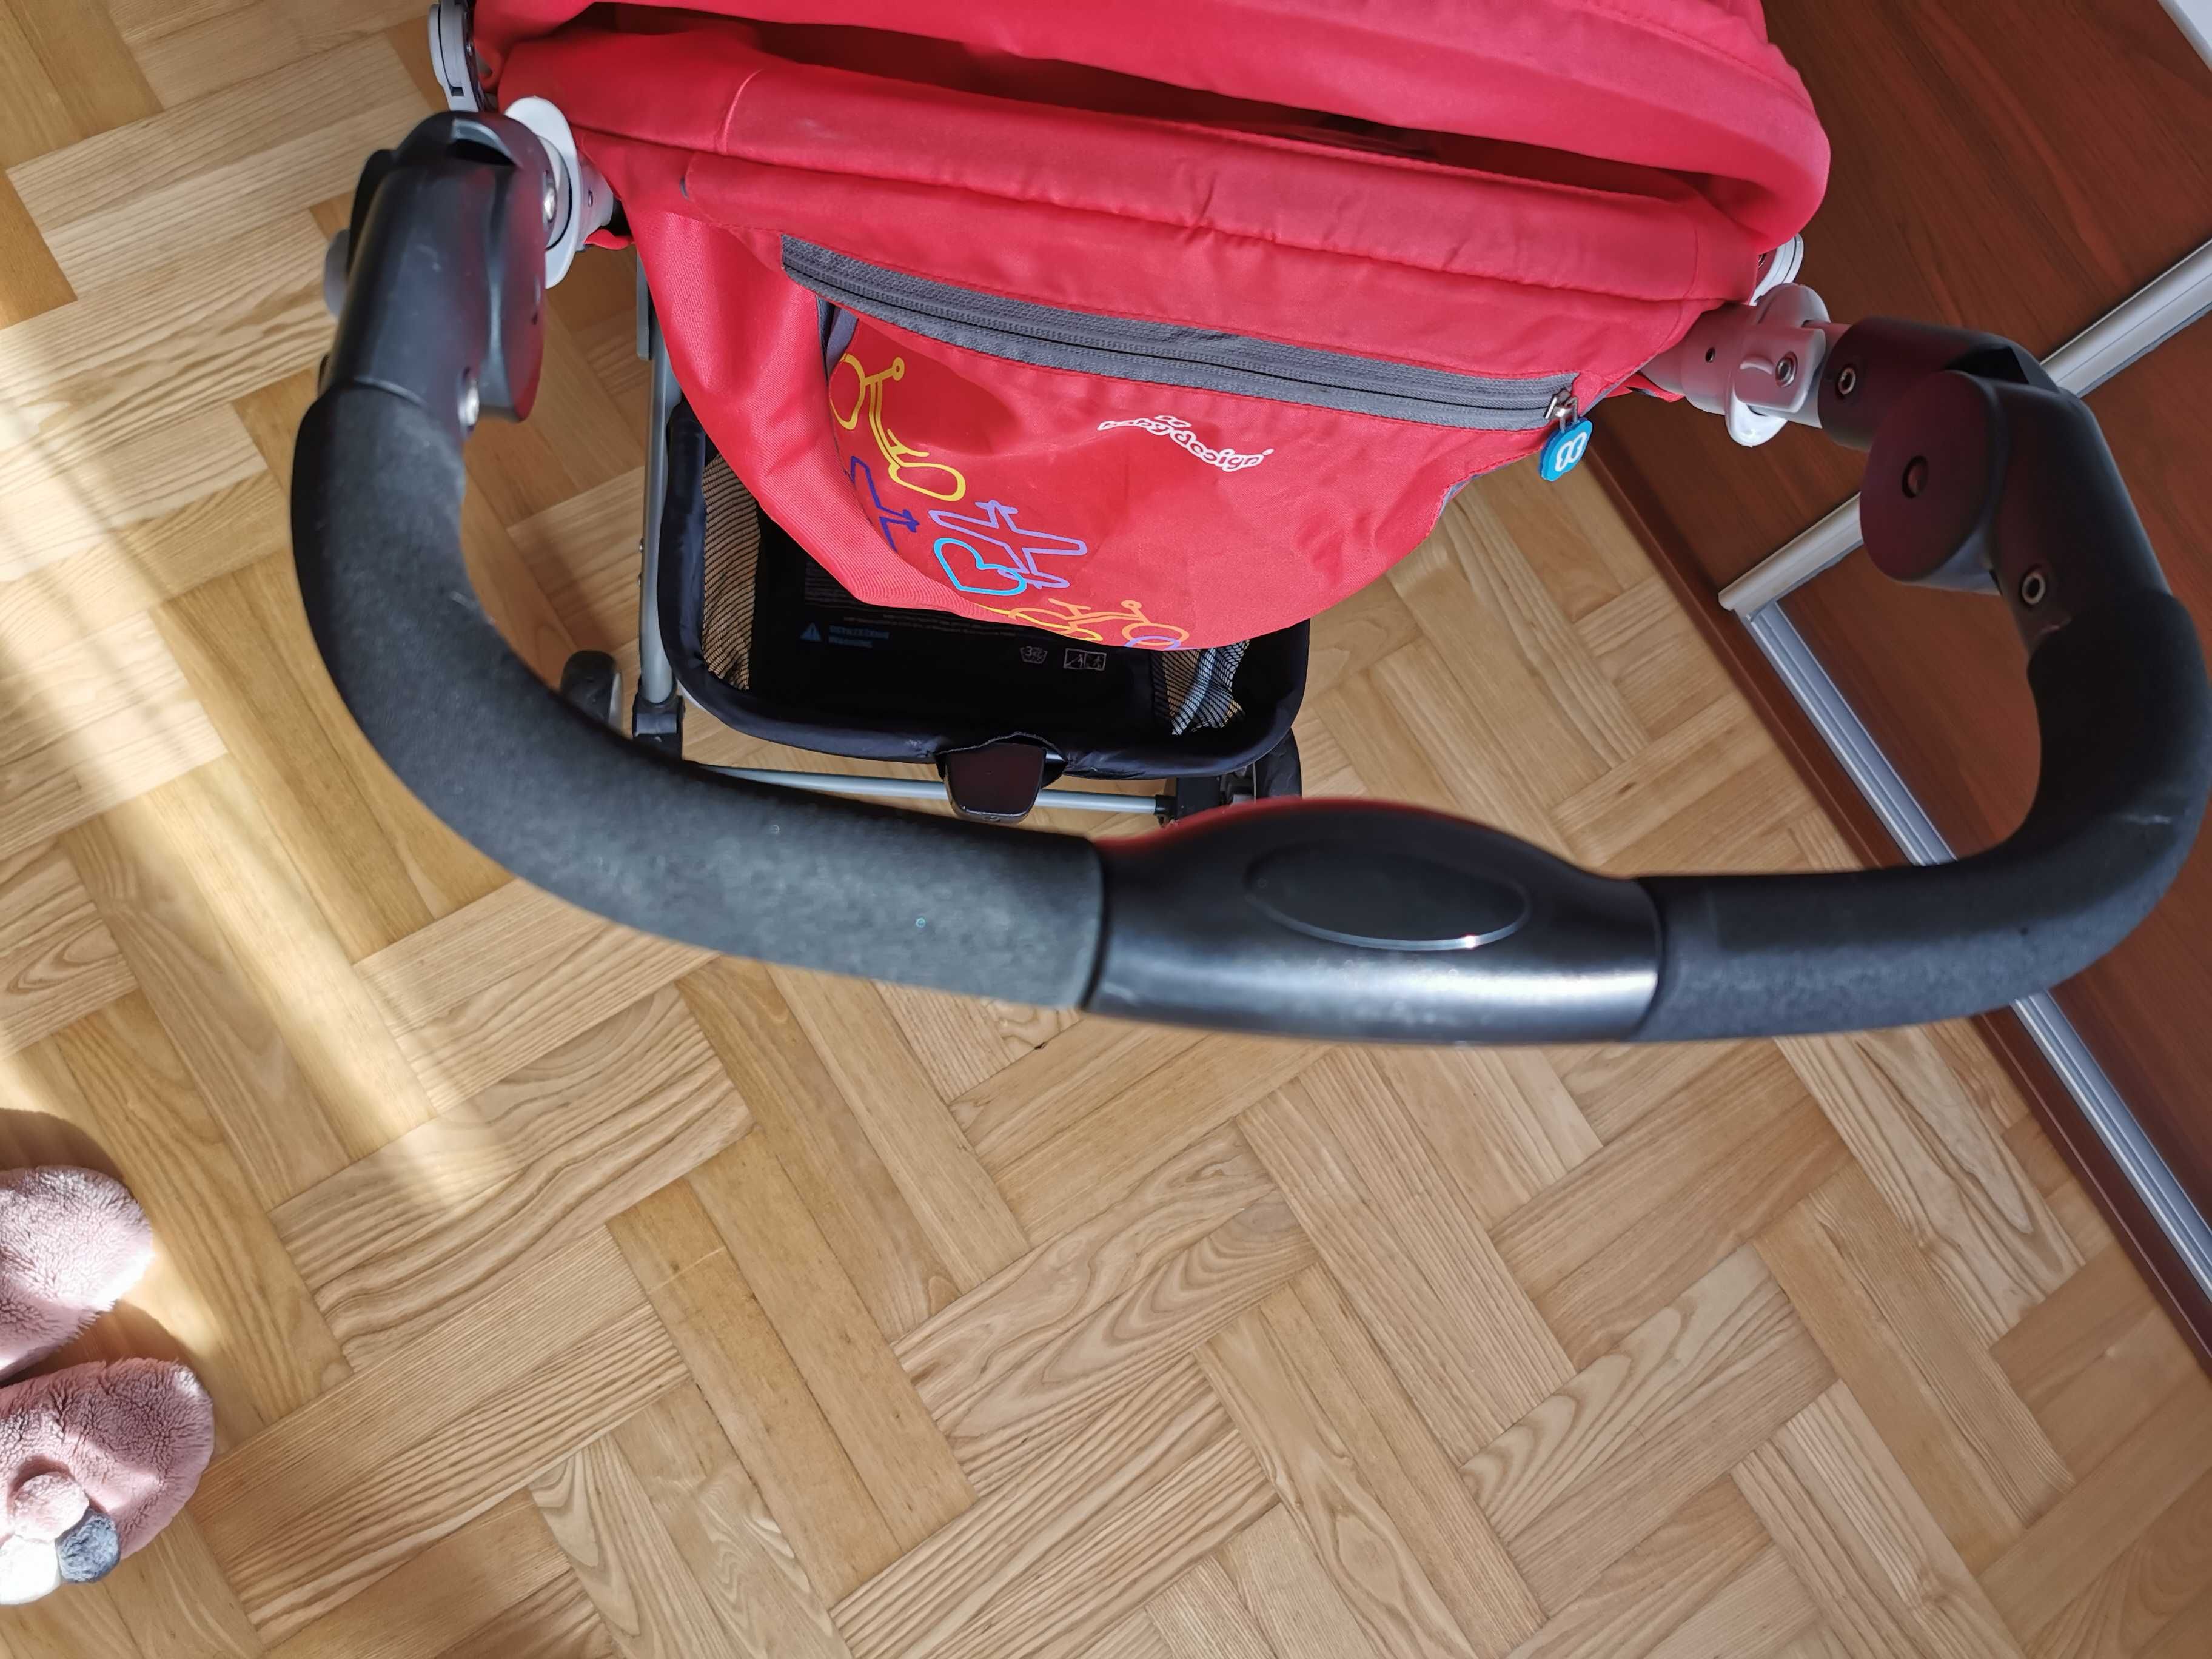 Wózek spacerowy Baby Design składany.